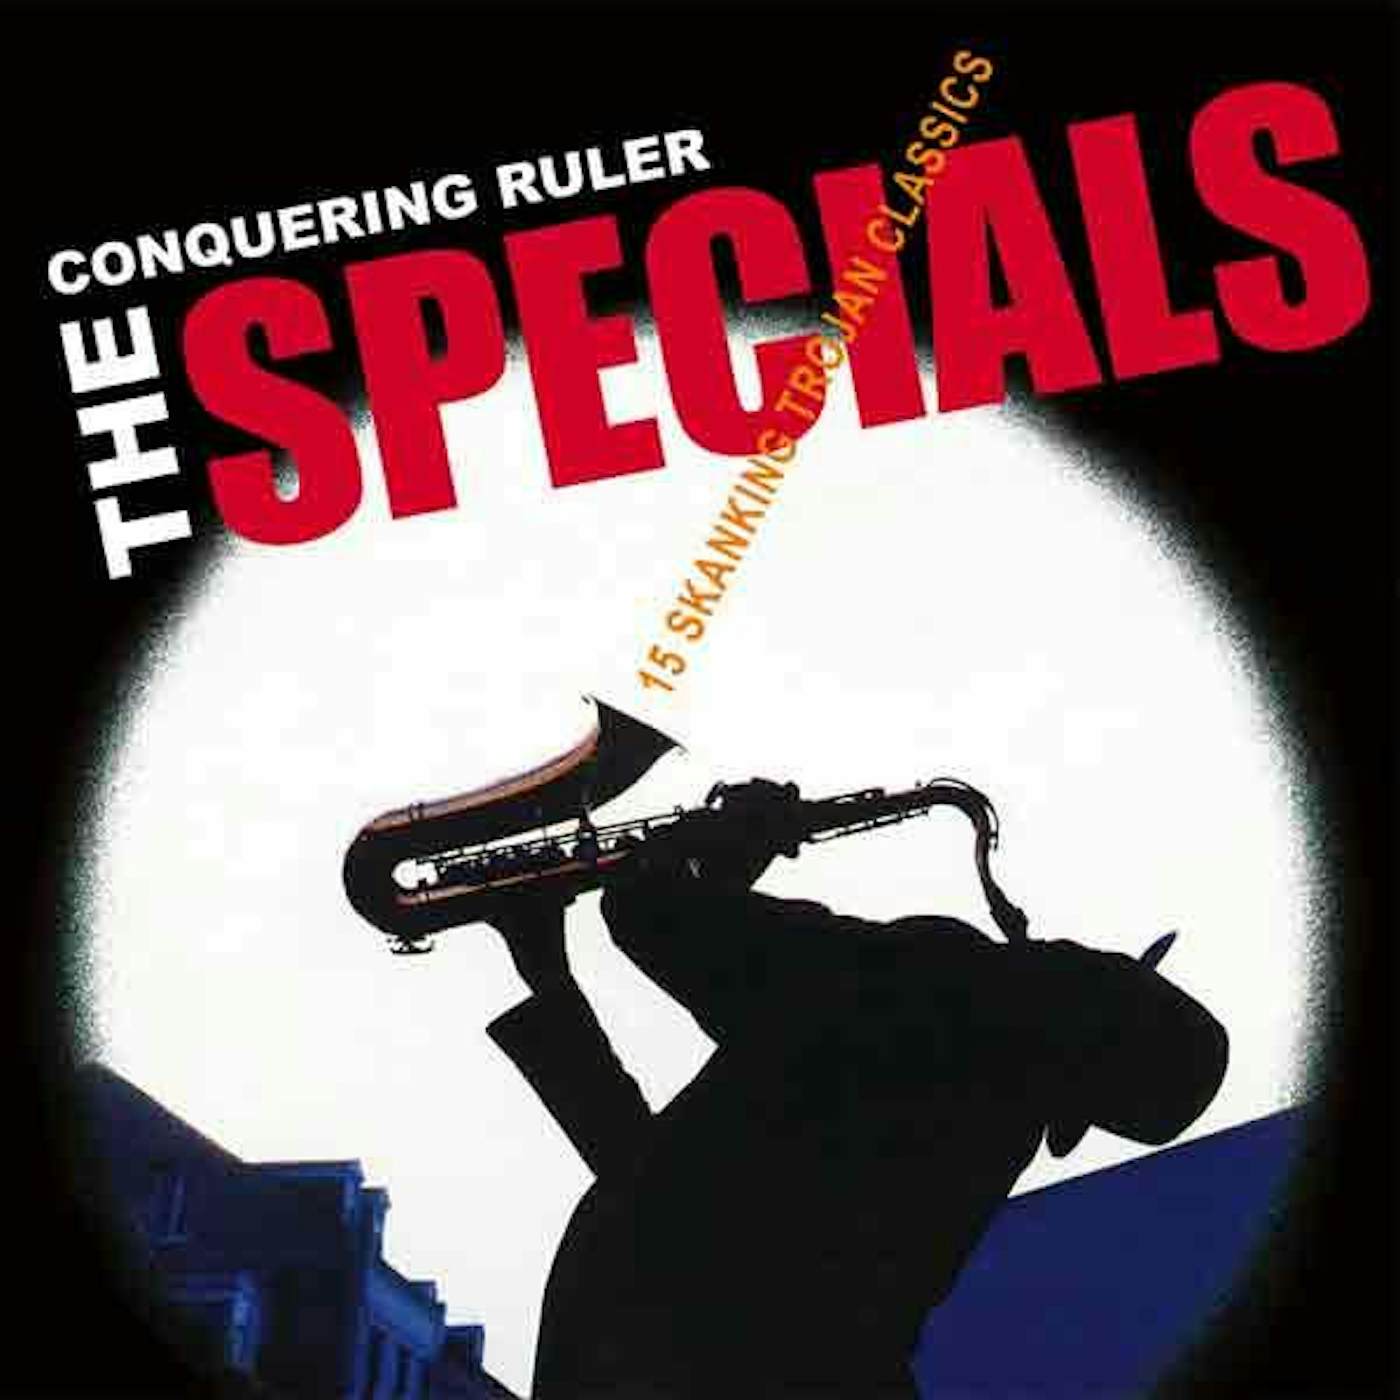 The Specials CONQUERING RULER Vinyl Record